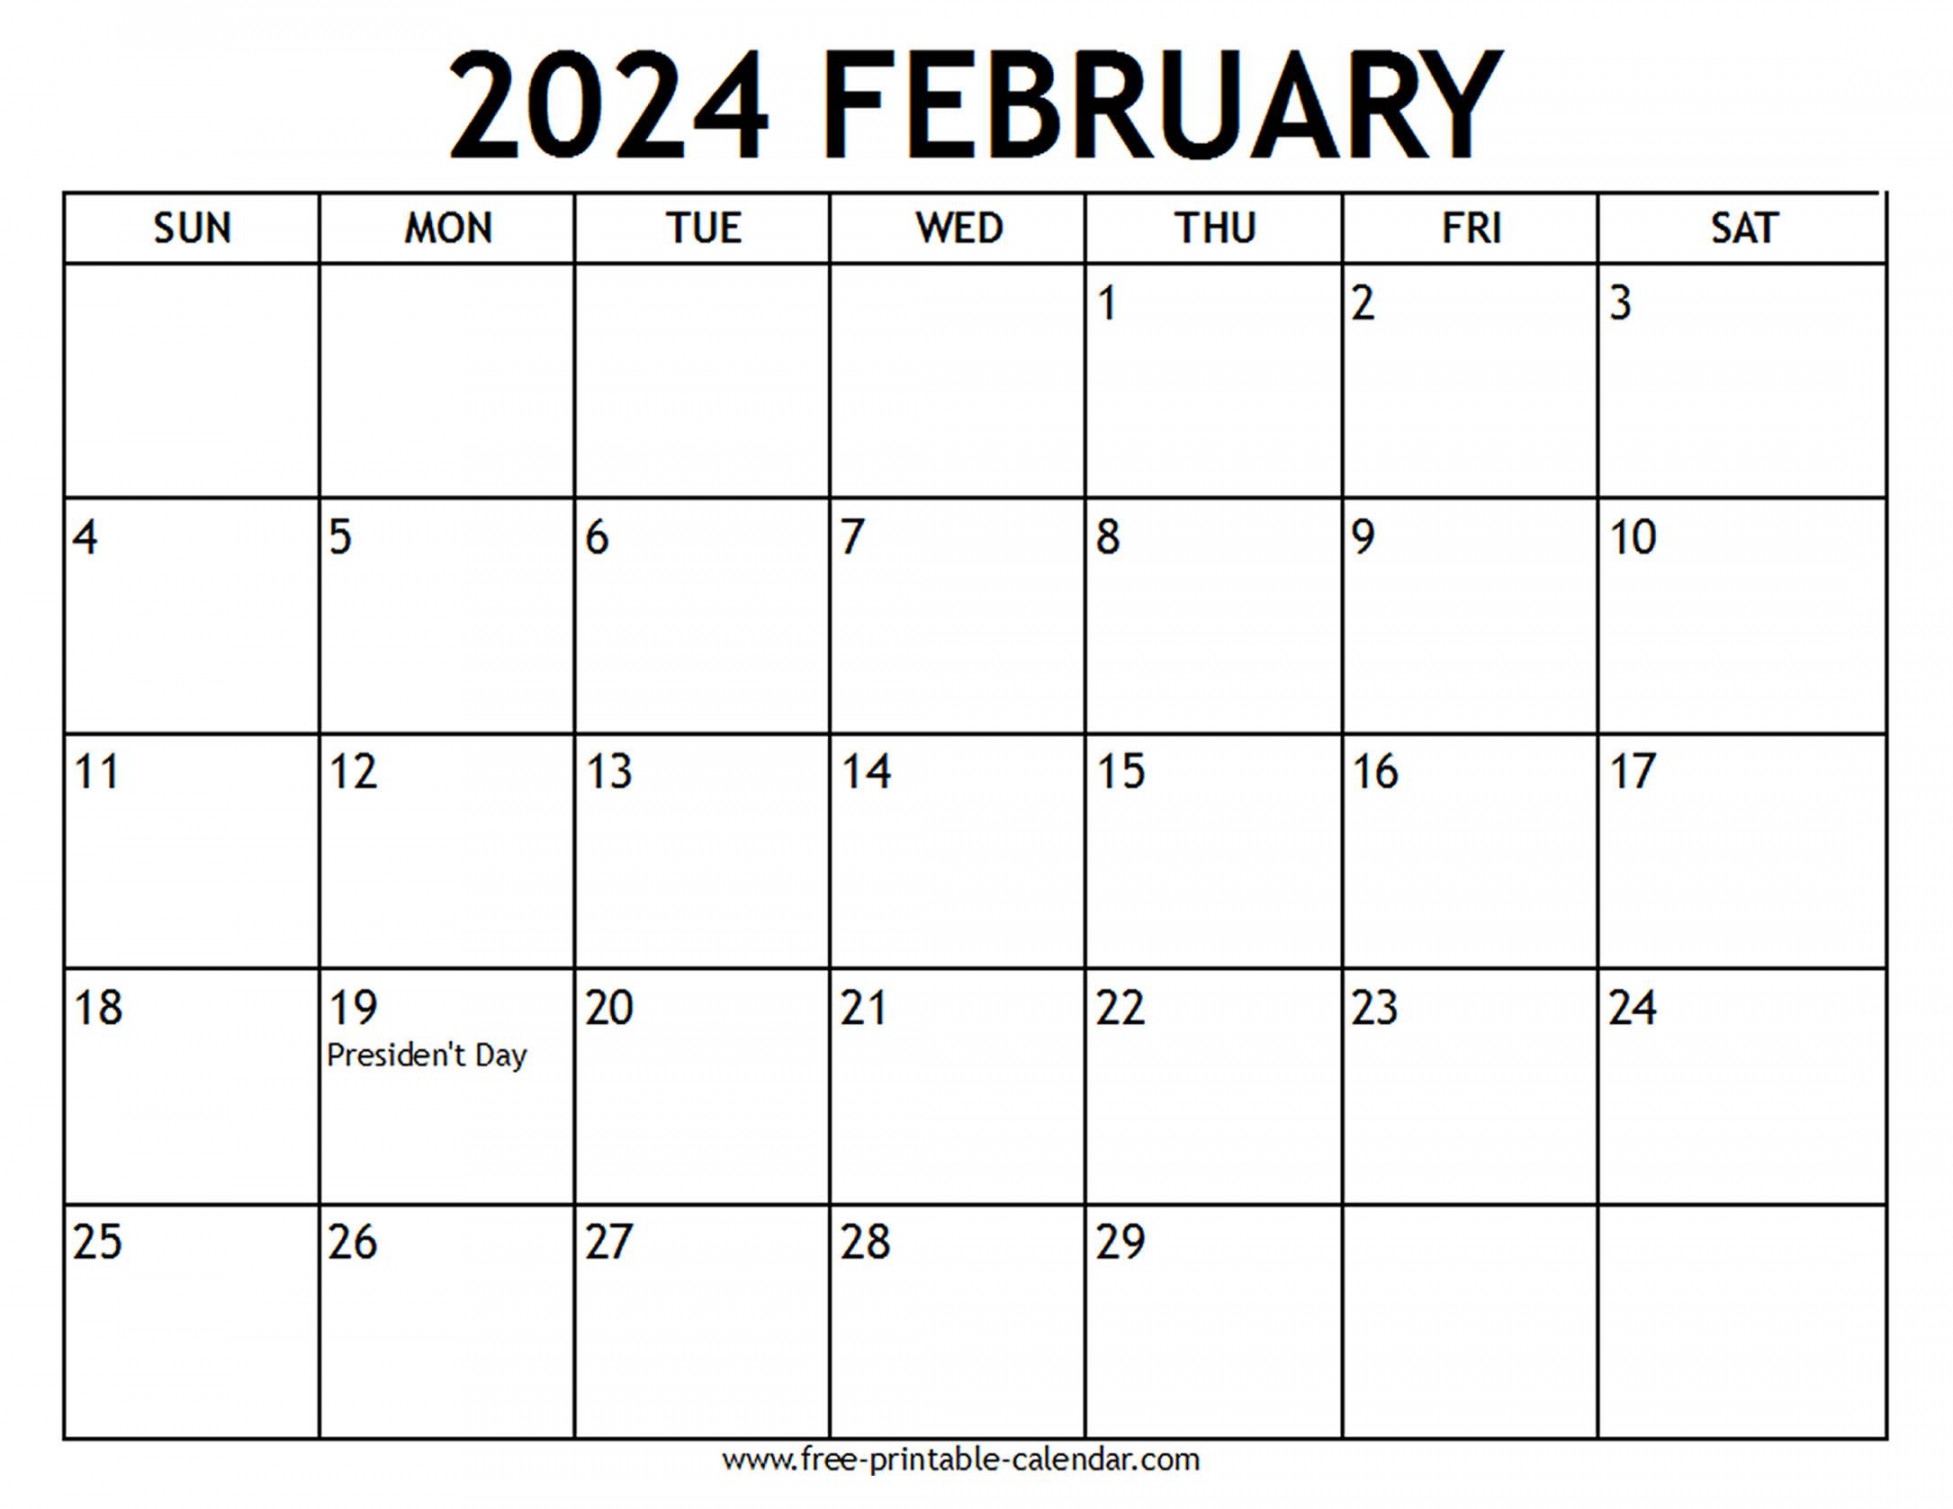 February  Calendar US Holidays - Free-printable-calendar